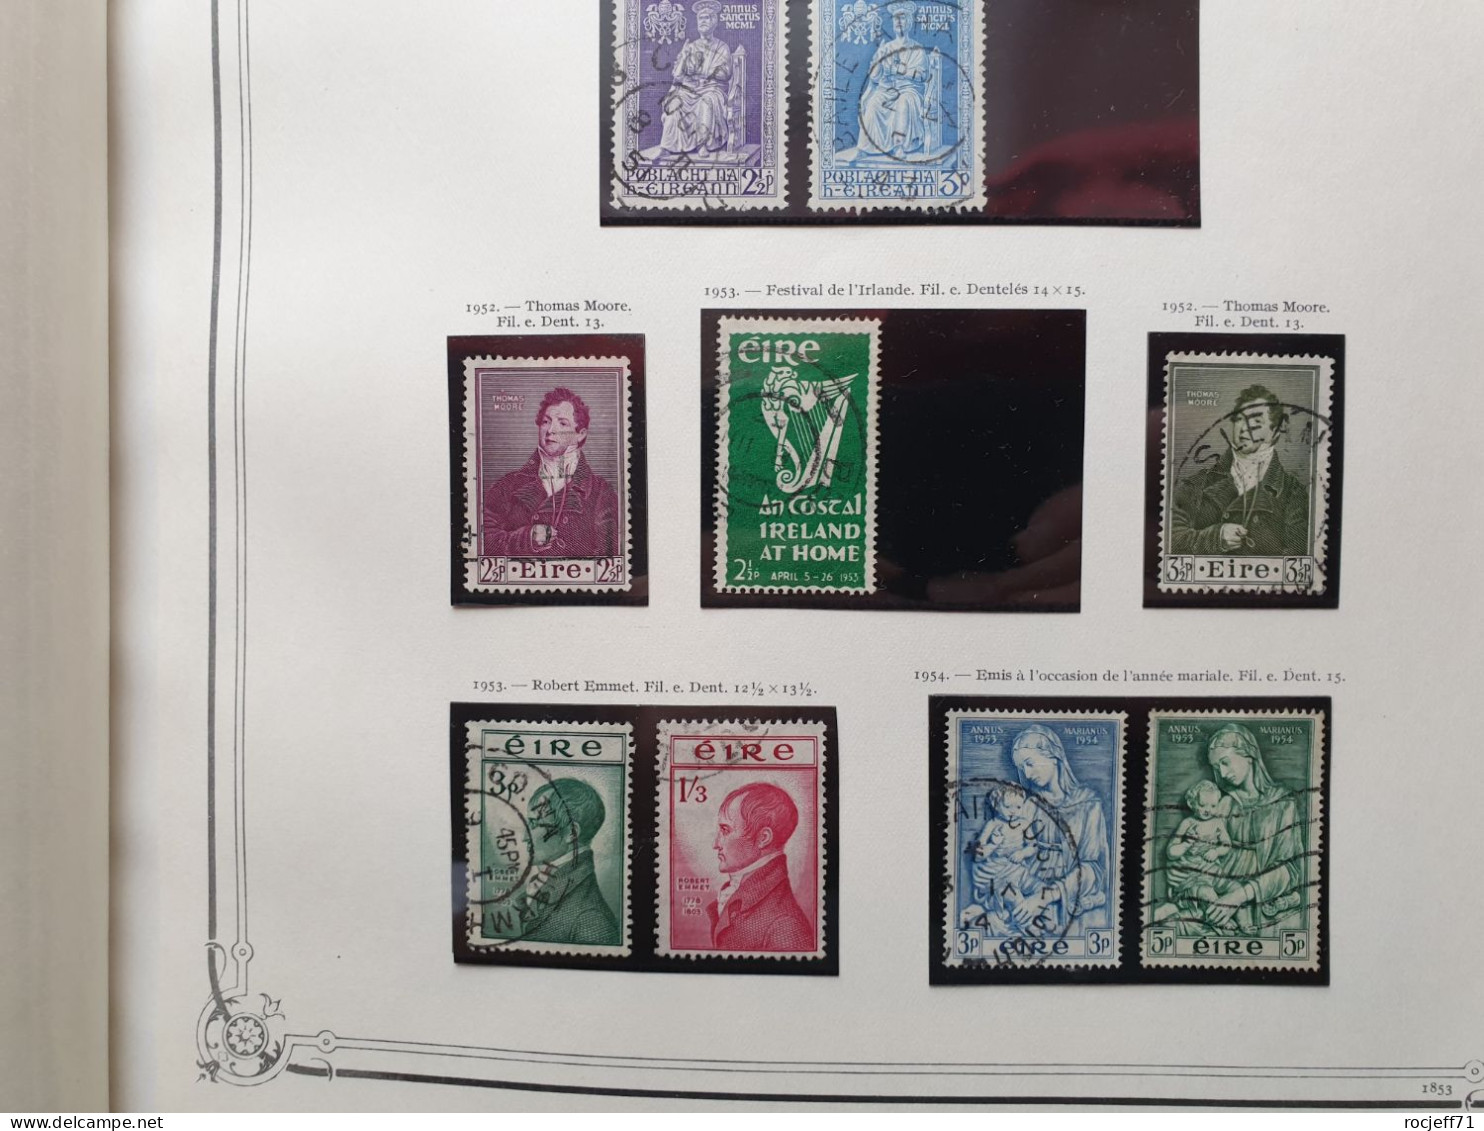 12 - 23 // Irlande - Belle collection entre 1922 et 1974 sur page d'Album - Cote environs 1100 euros  //   36 scans